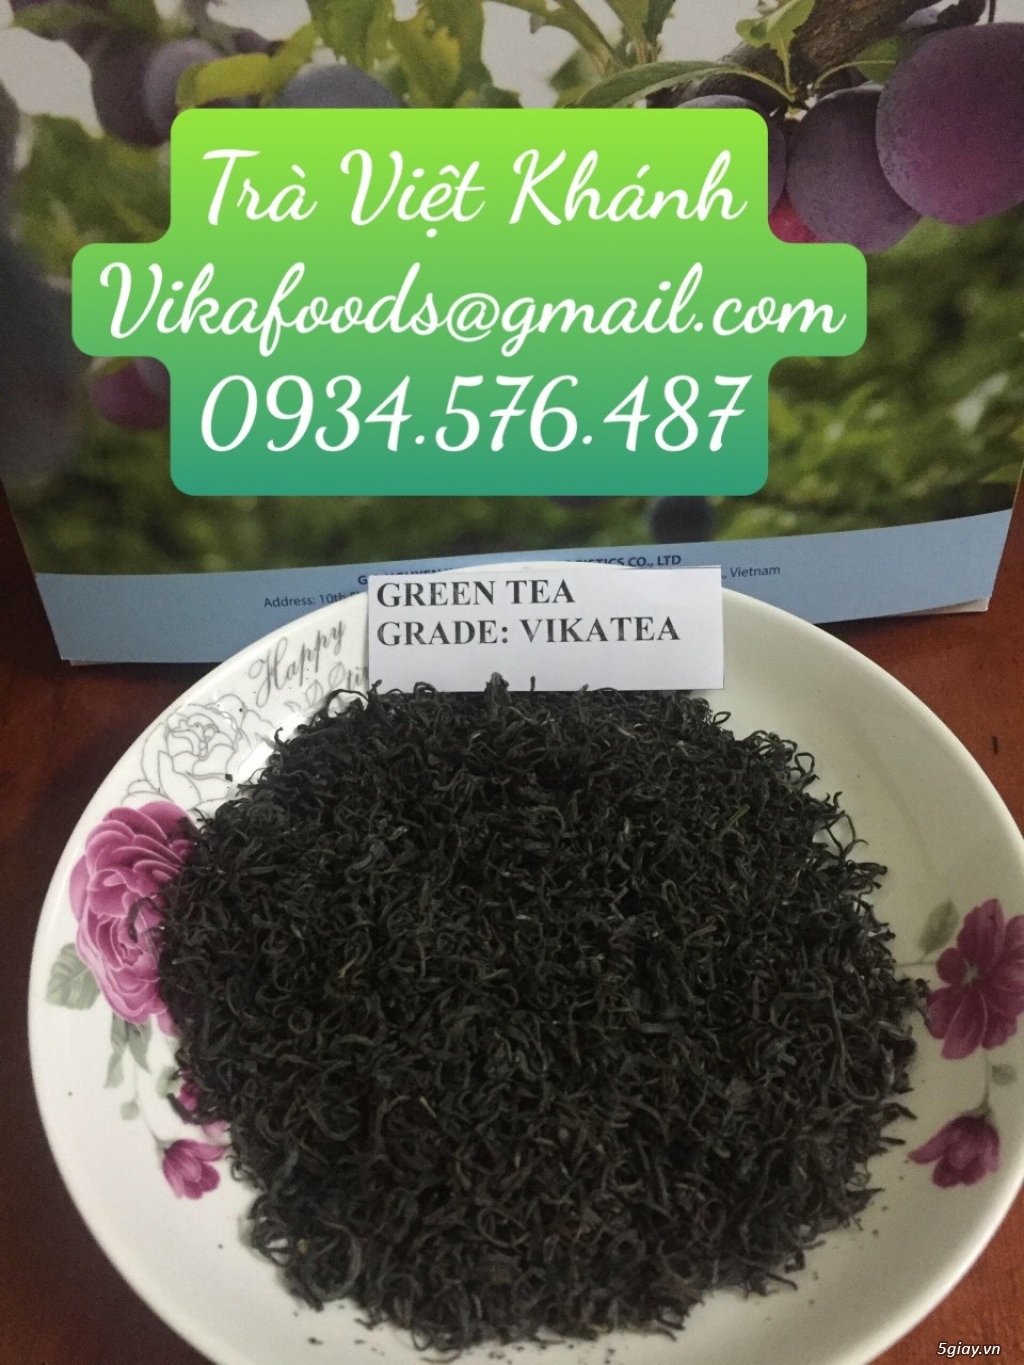 Chuyên cung cấp trà xanh, trà ướp hương các loại, trà đen, trà ôlong x